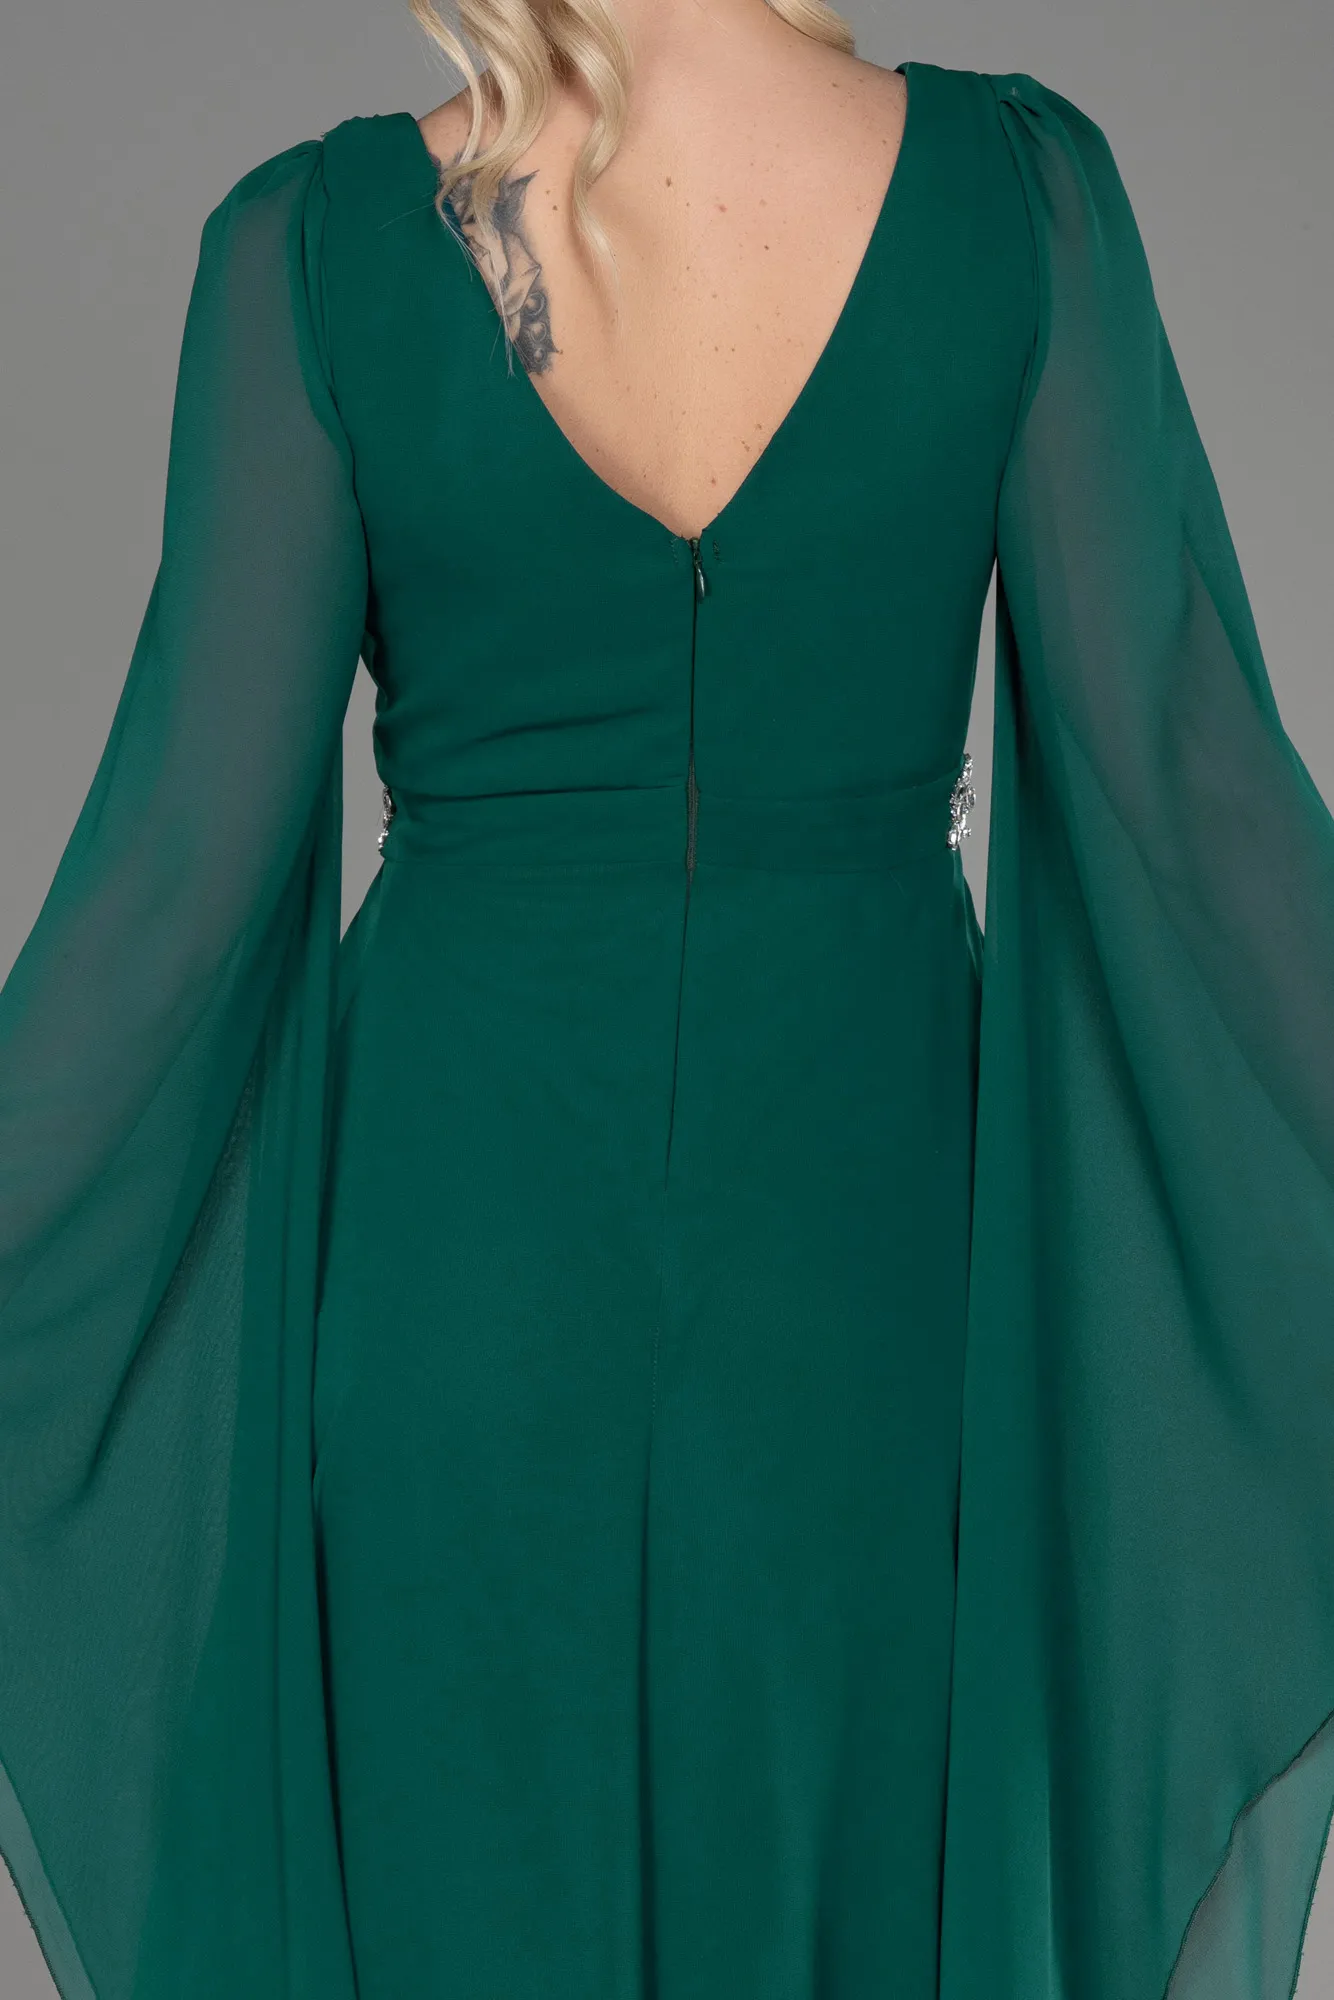 Emerald Green-Long Chiffon Evening Dress ABU3541